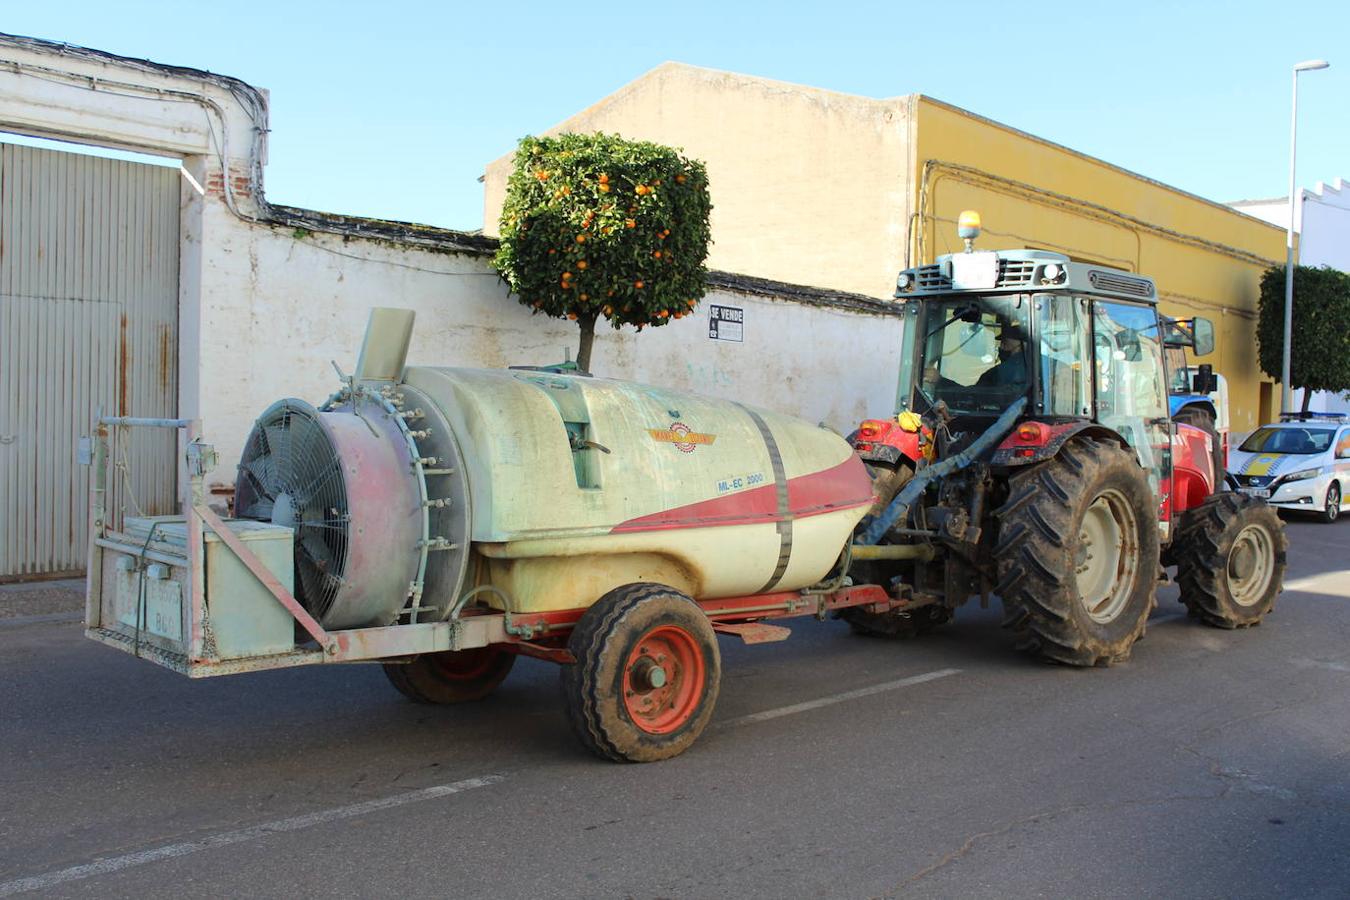 Los agricultores aportan su vehículo y su atomizador, mientras que los productos se los facilita el Ayuntamiento